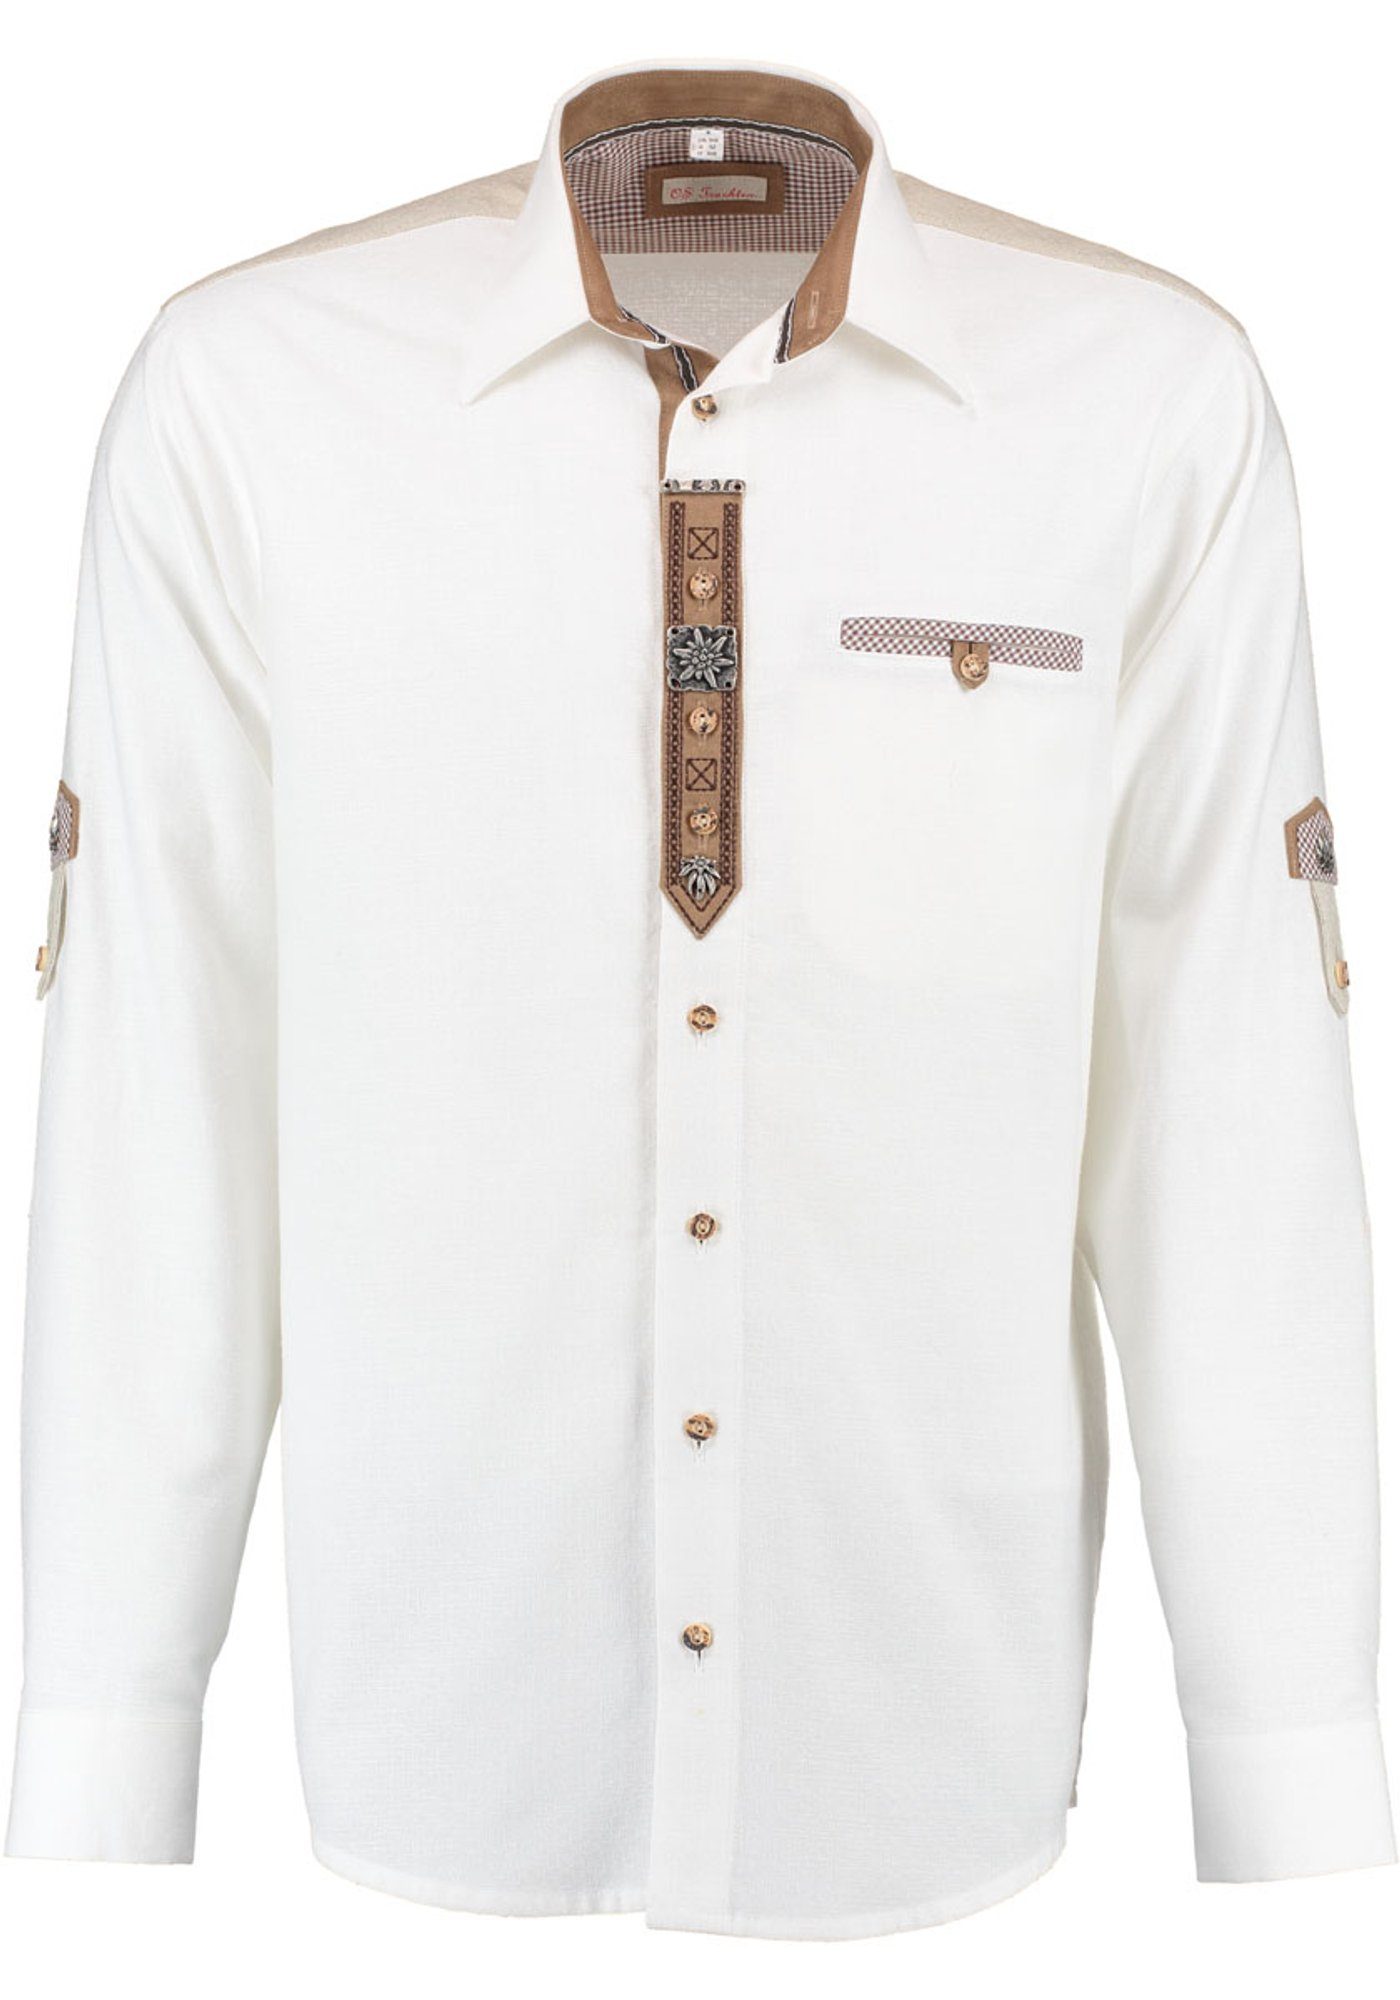 OS-Trachten Trachtenhemd Brawe Langarmhemd mit Edelweiß-Ziertel auf der Knopfleiste